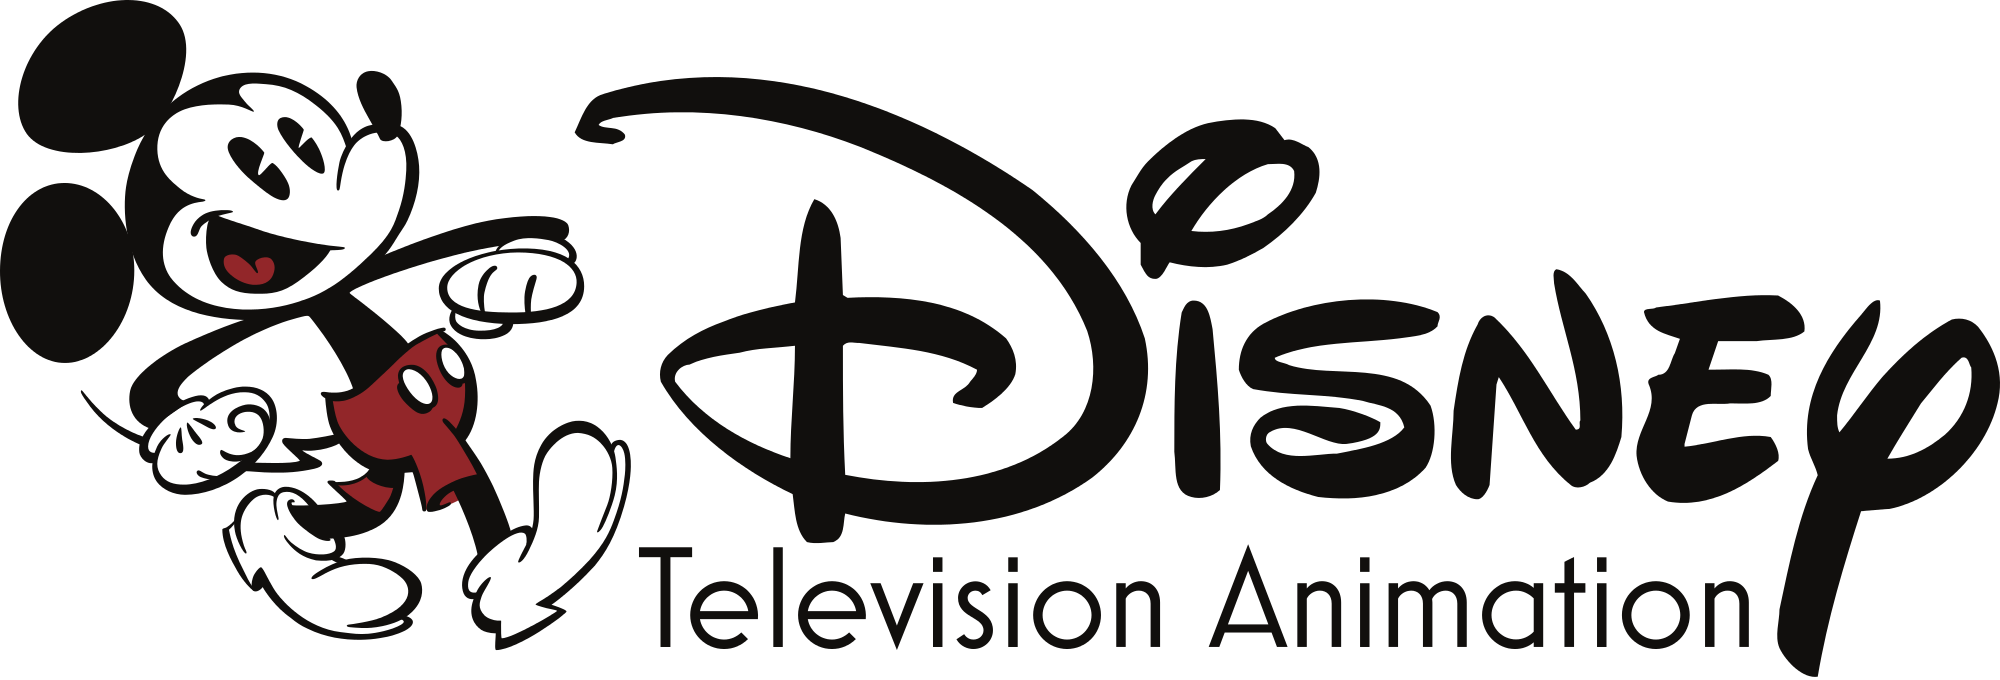 Disney Television Animation | Disney Wiki | FANDOM powered by Wikia